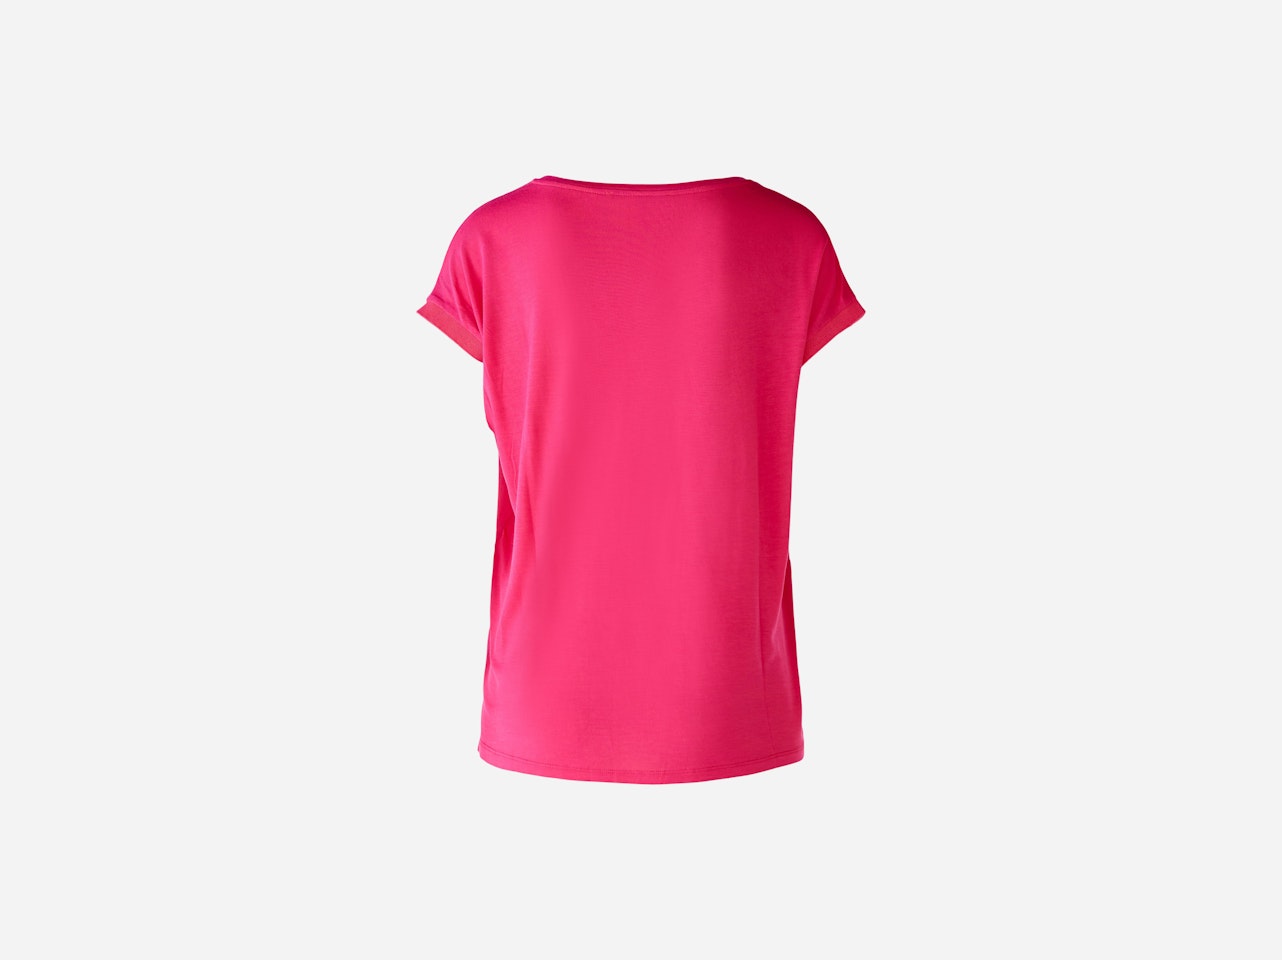 Bild 7 von Blusenshirt 100% Viskosepatch in pink | Oui